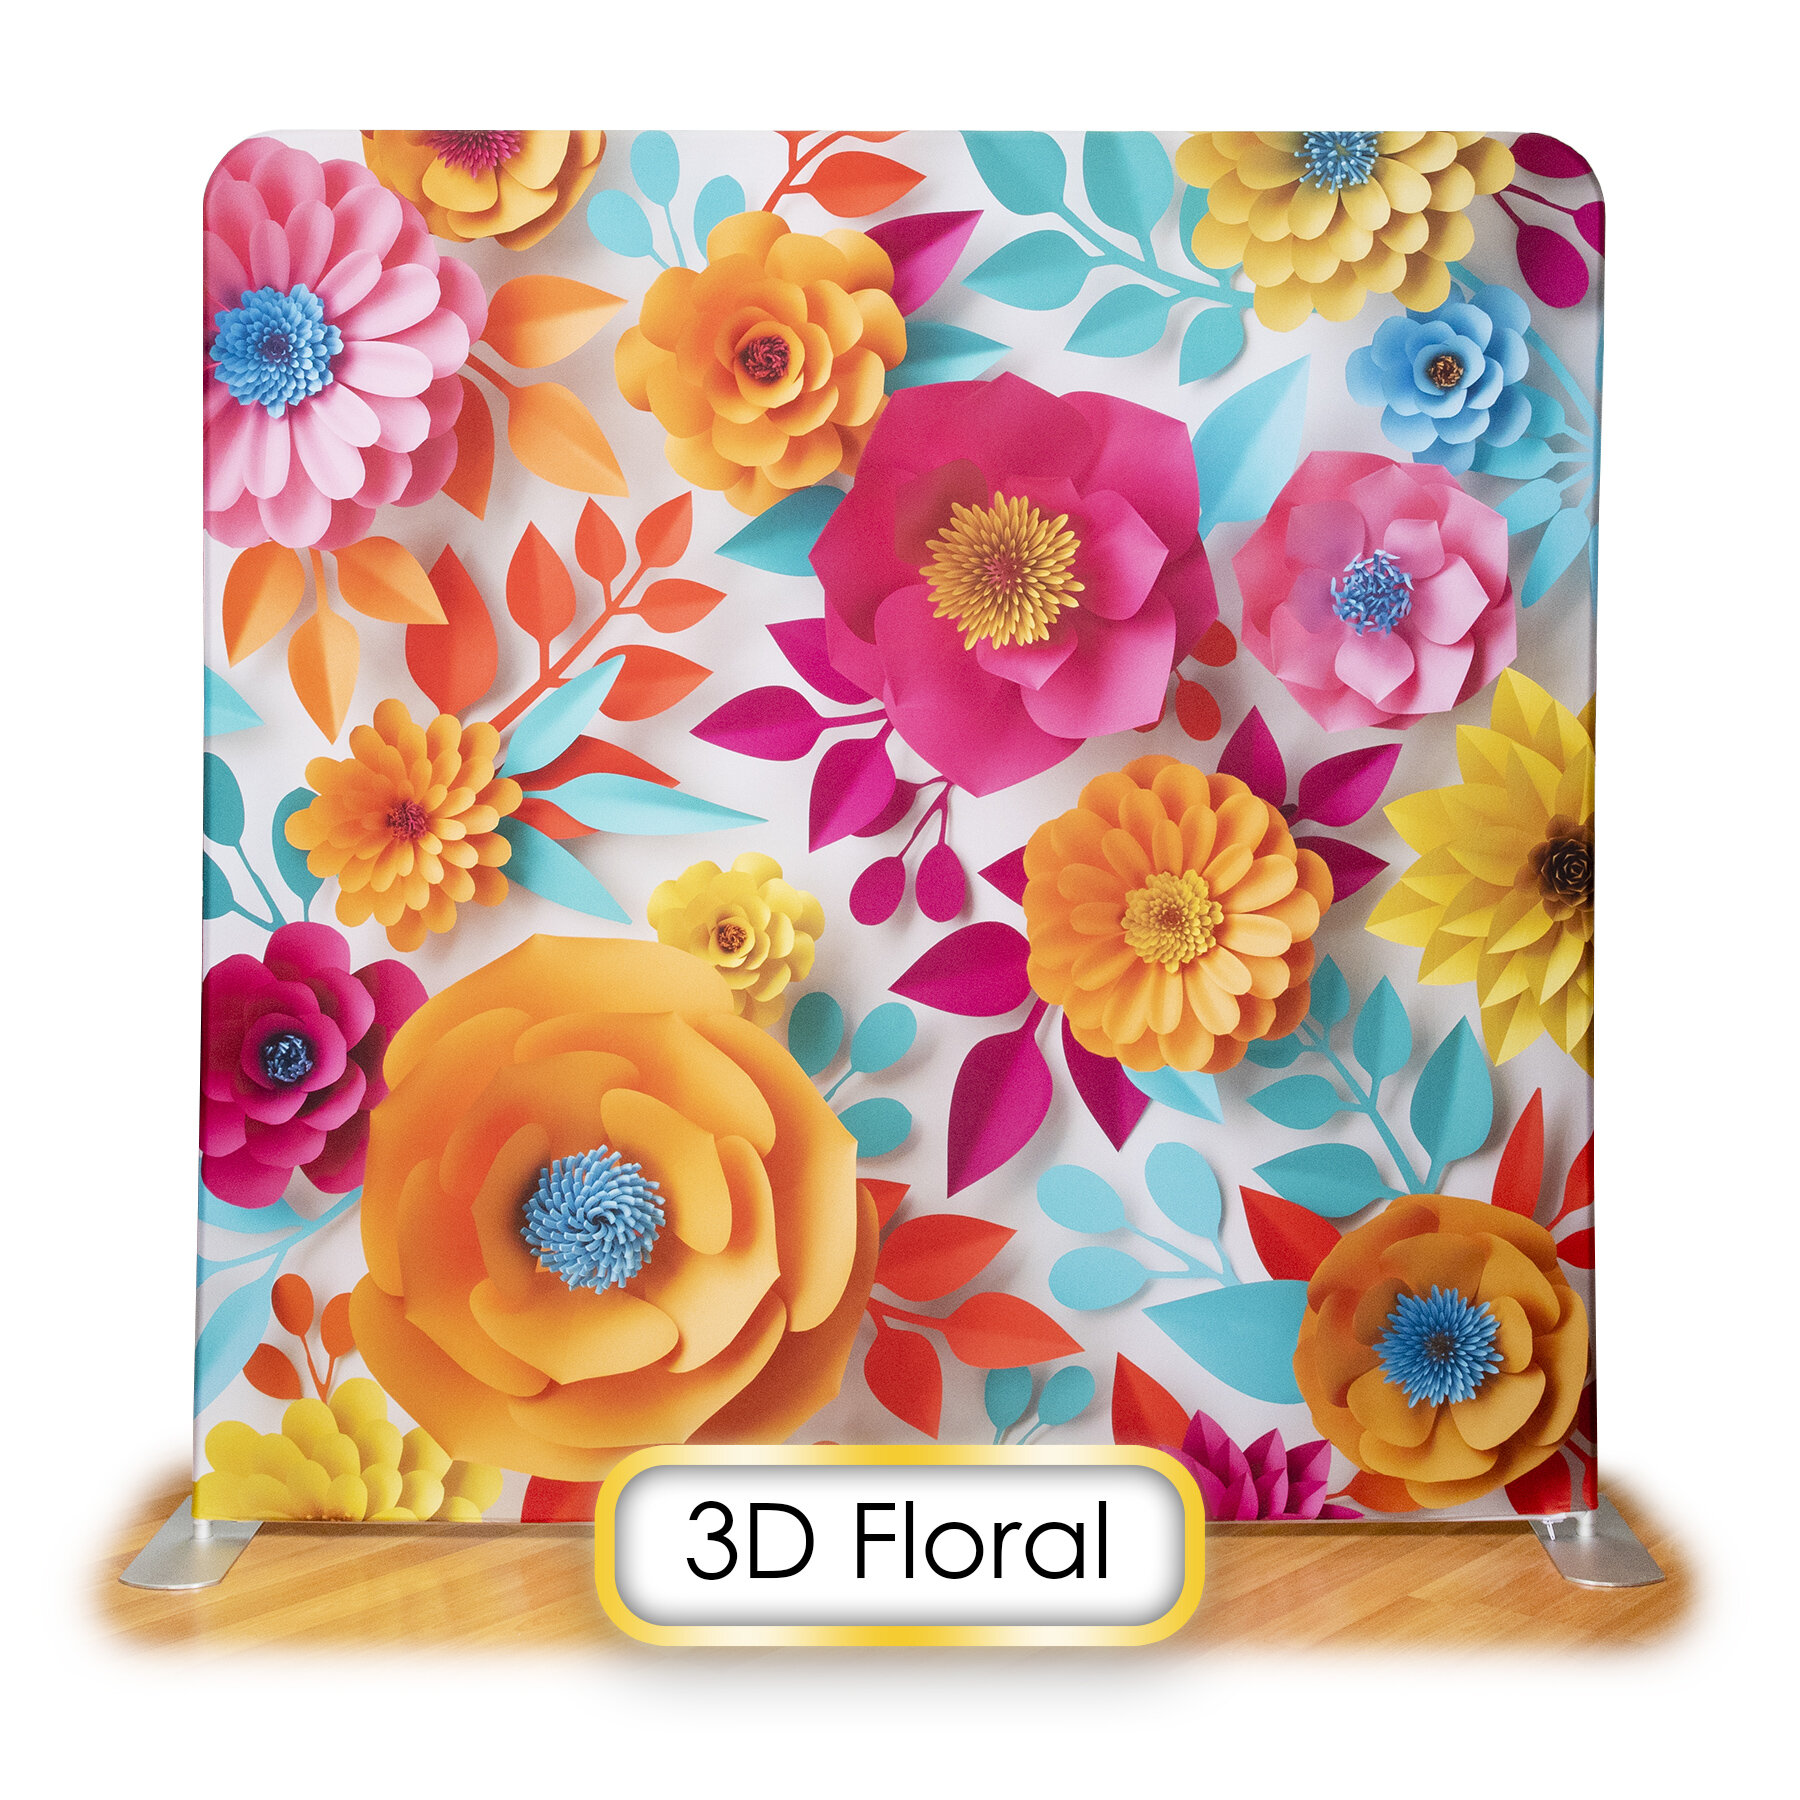 3D Floral.jpg